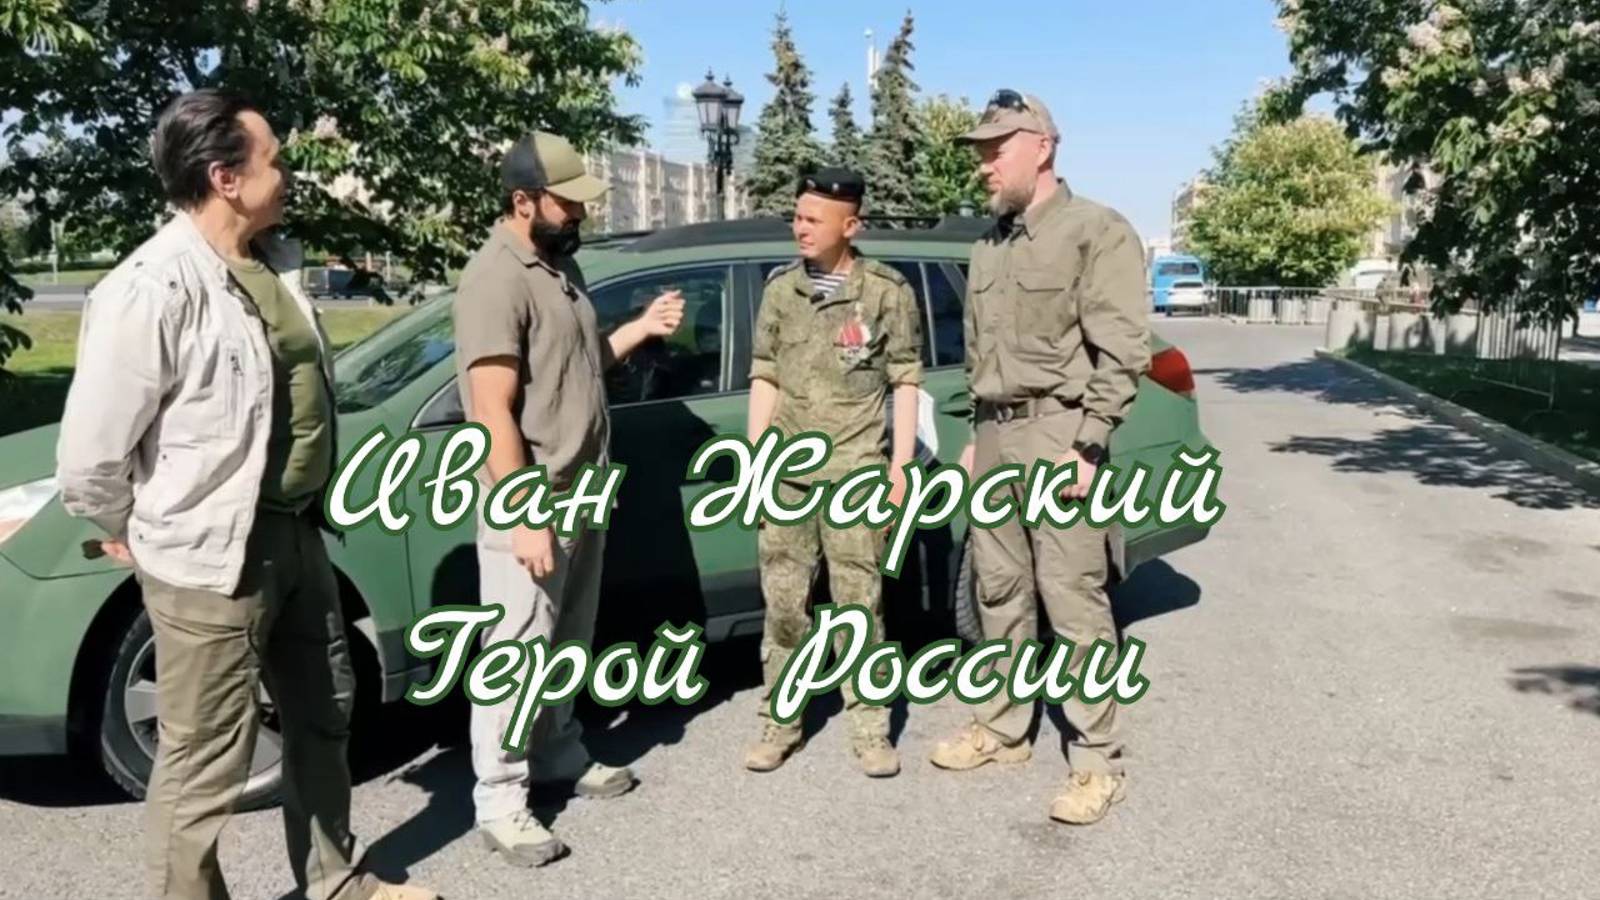 Иван Жарский герой России, вручение автомобиля и гуманитарной помощи на фронт. #Сорадение #Троя #Жар